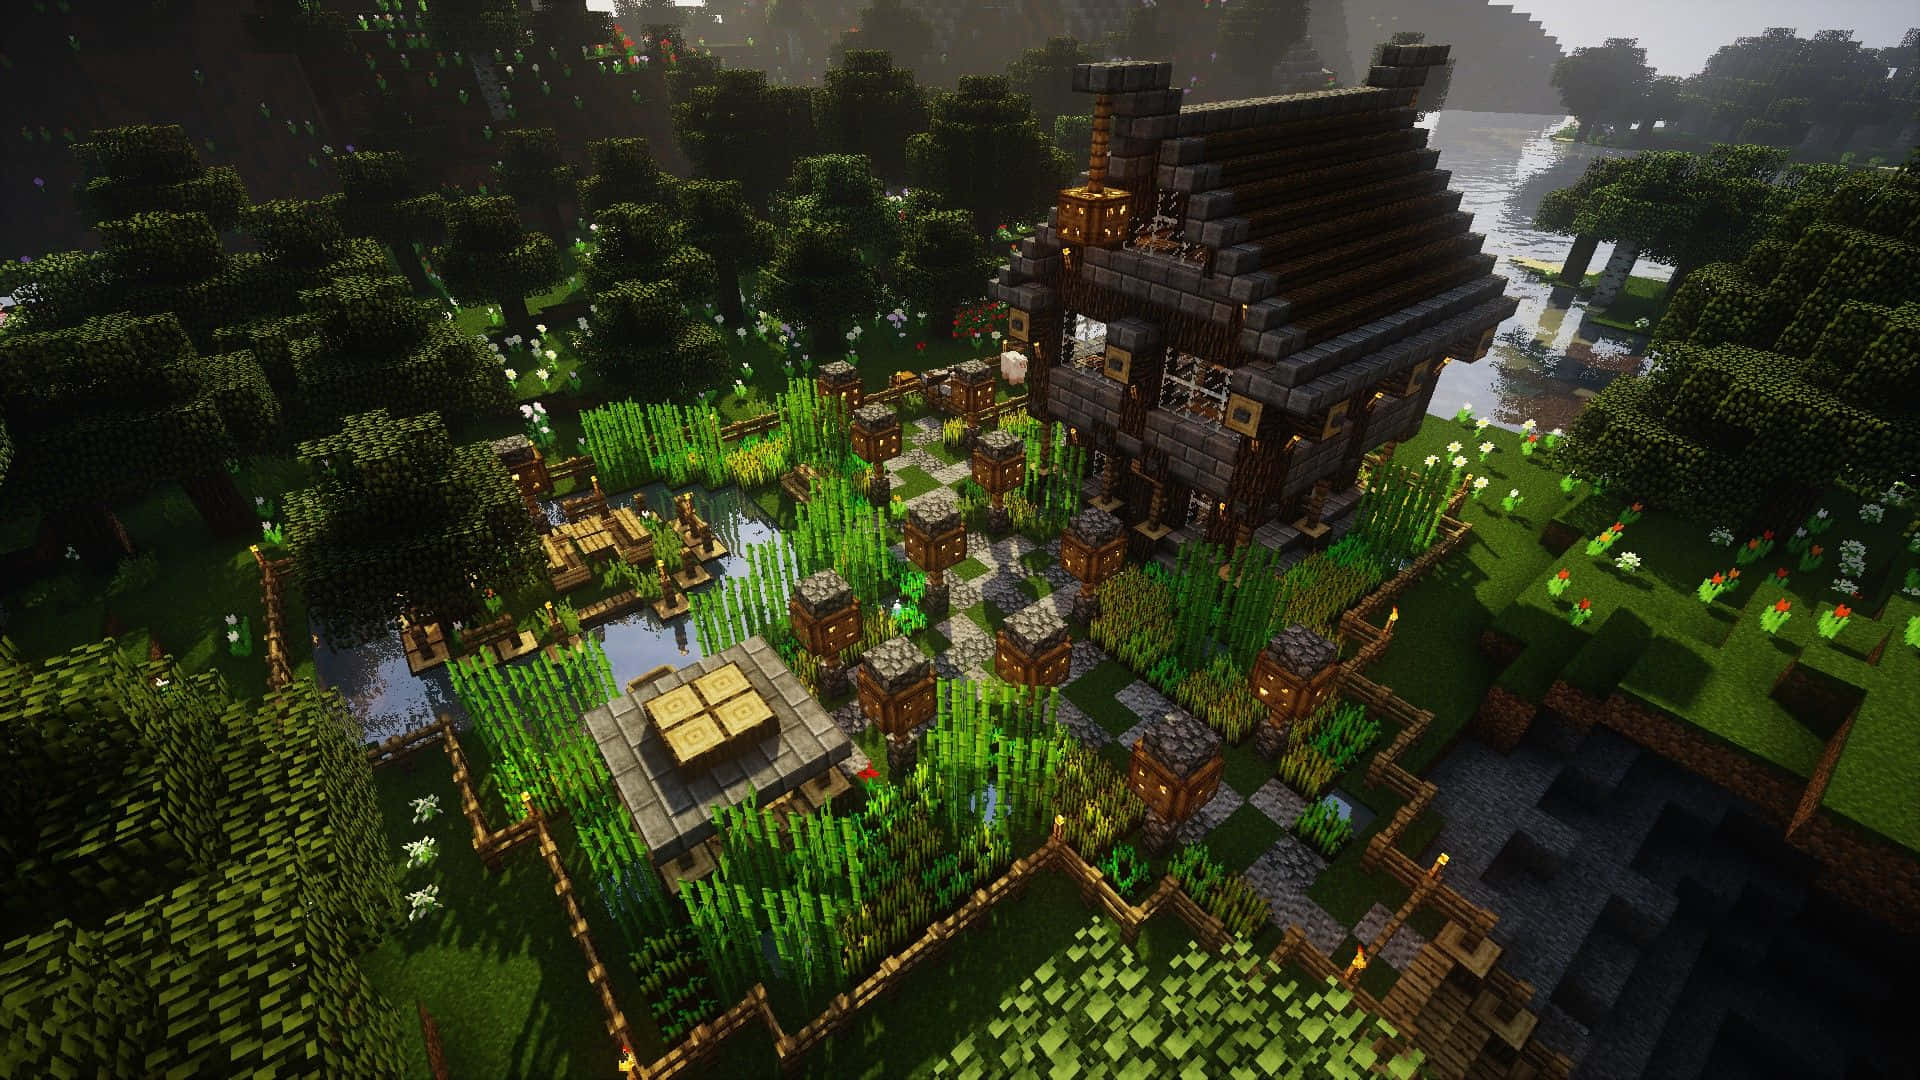 Visning af et udvalg af smukke Minecraft huse